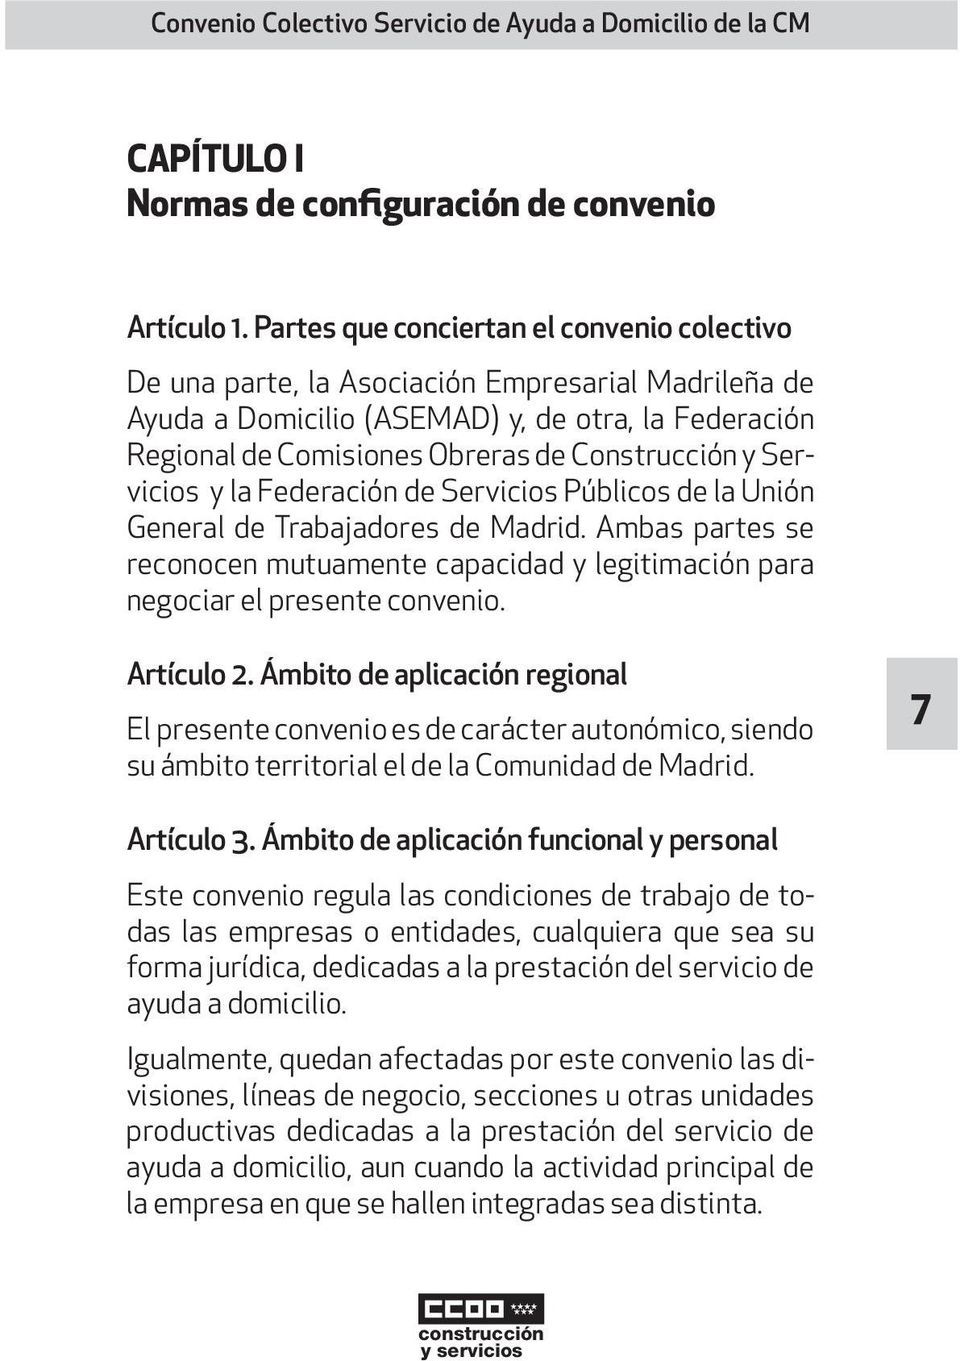 Servicios y la Federación de Servicios Públicos de la Unión General de Trabajadores de Madrid. Ambas partes se reconocen mutuamente capacidad y legitimación para negociar el presente convenio.